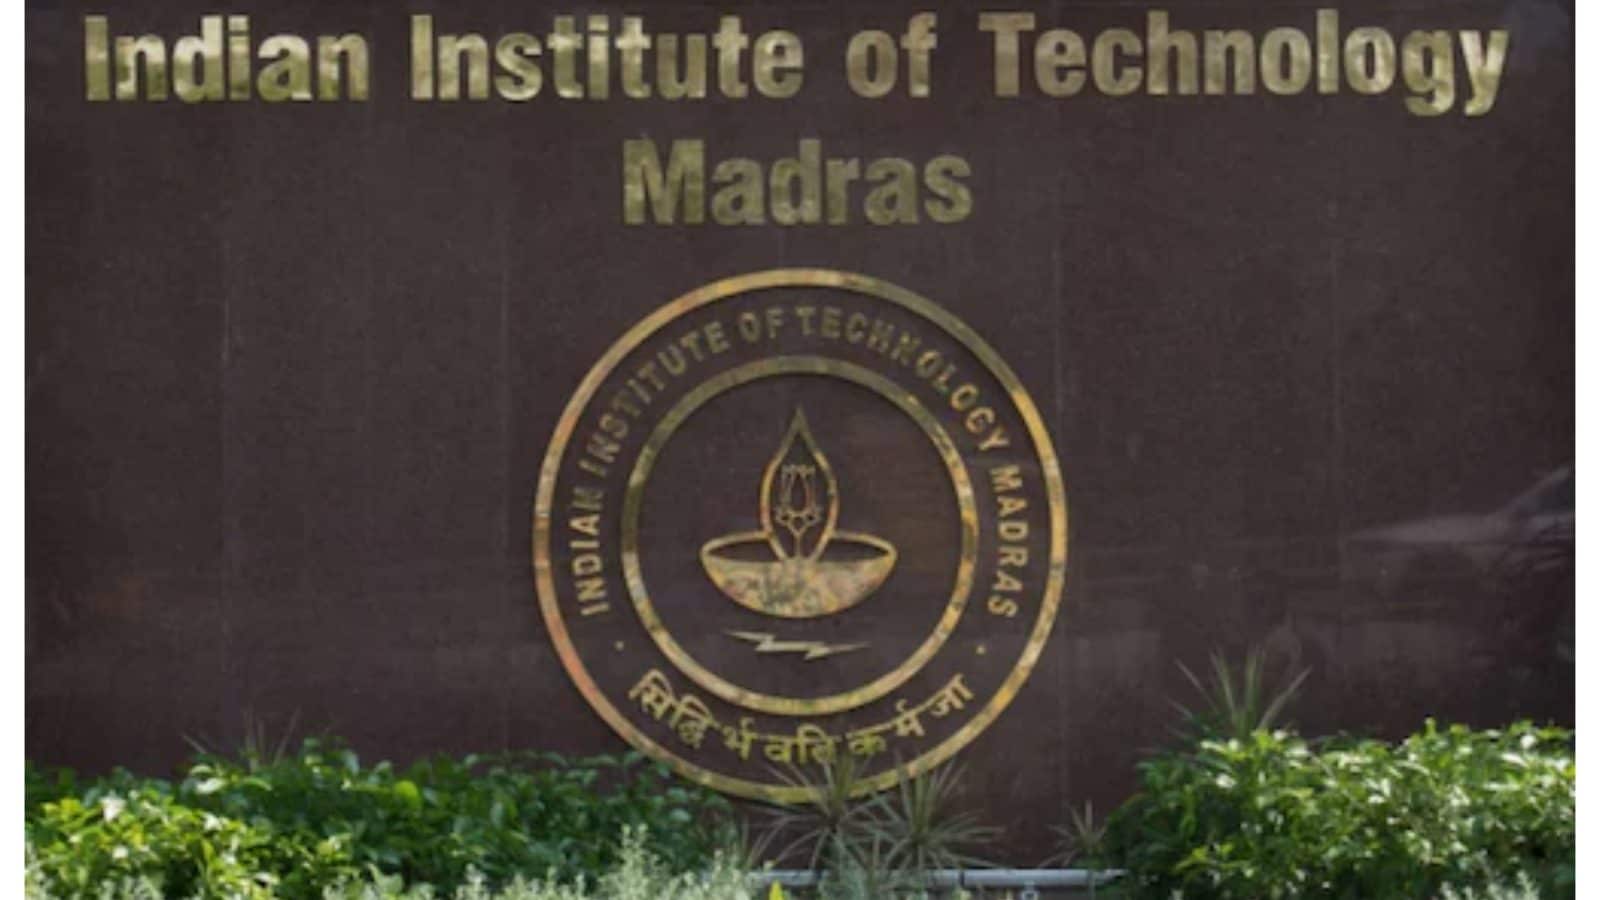 విద్యార్థులకు ఐఐటీ మద్రాస్ బంపర్ ఆఫర్.. డేటా సైన్స్ లో కొత్త కోర్సులు.. ఇది చదివితే జాబ్ గ్యారెంటీ!-IIT Madras bumper offer for students.. New courses in data science ...